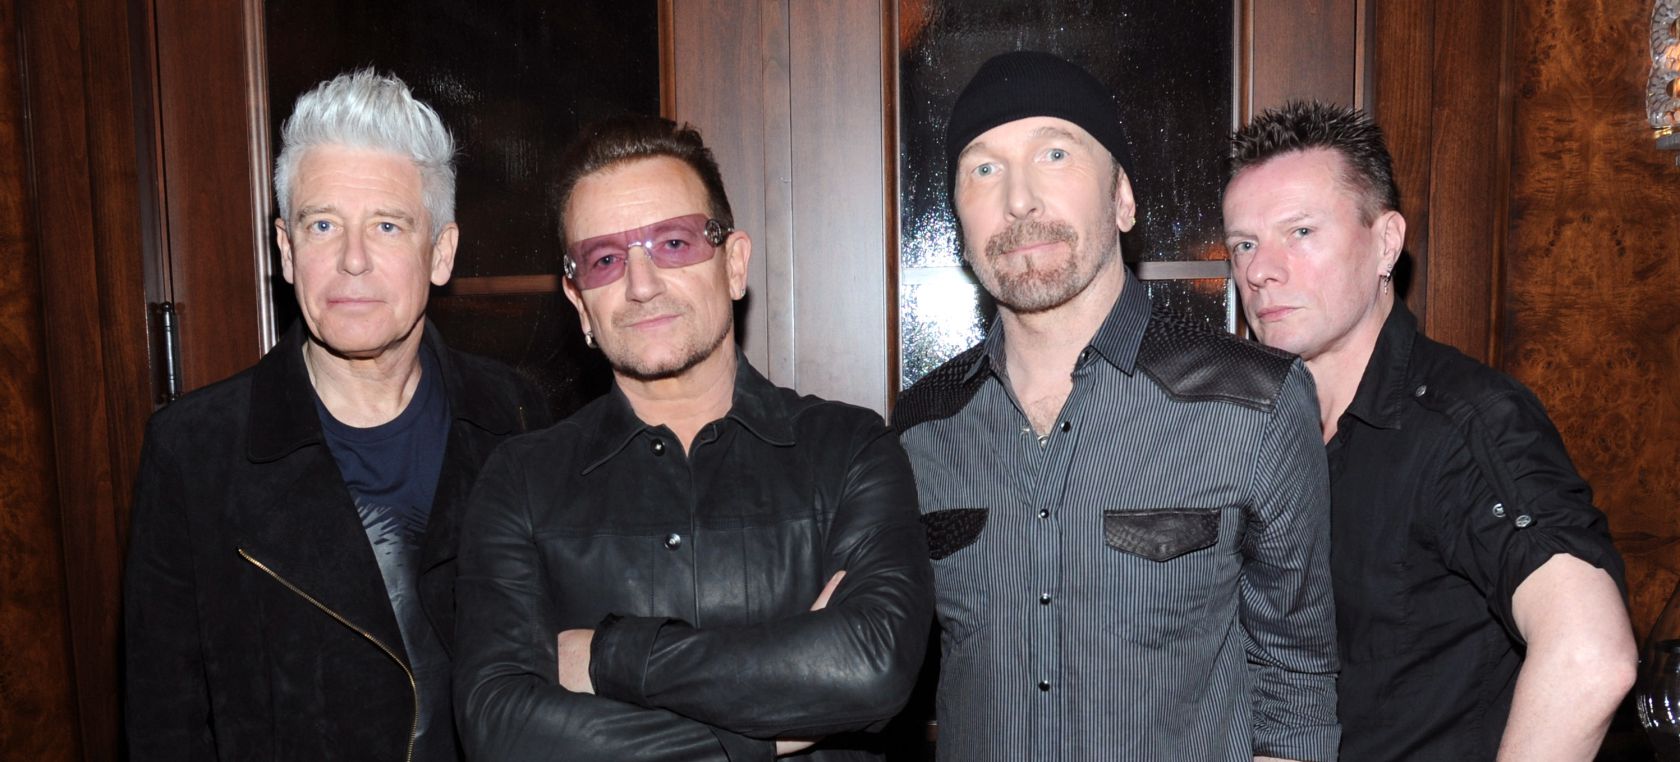 U2 publica su nuevo disco:
'Songs of Surrender'